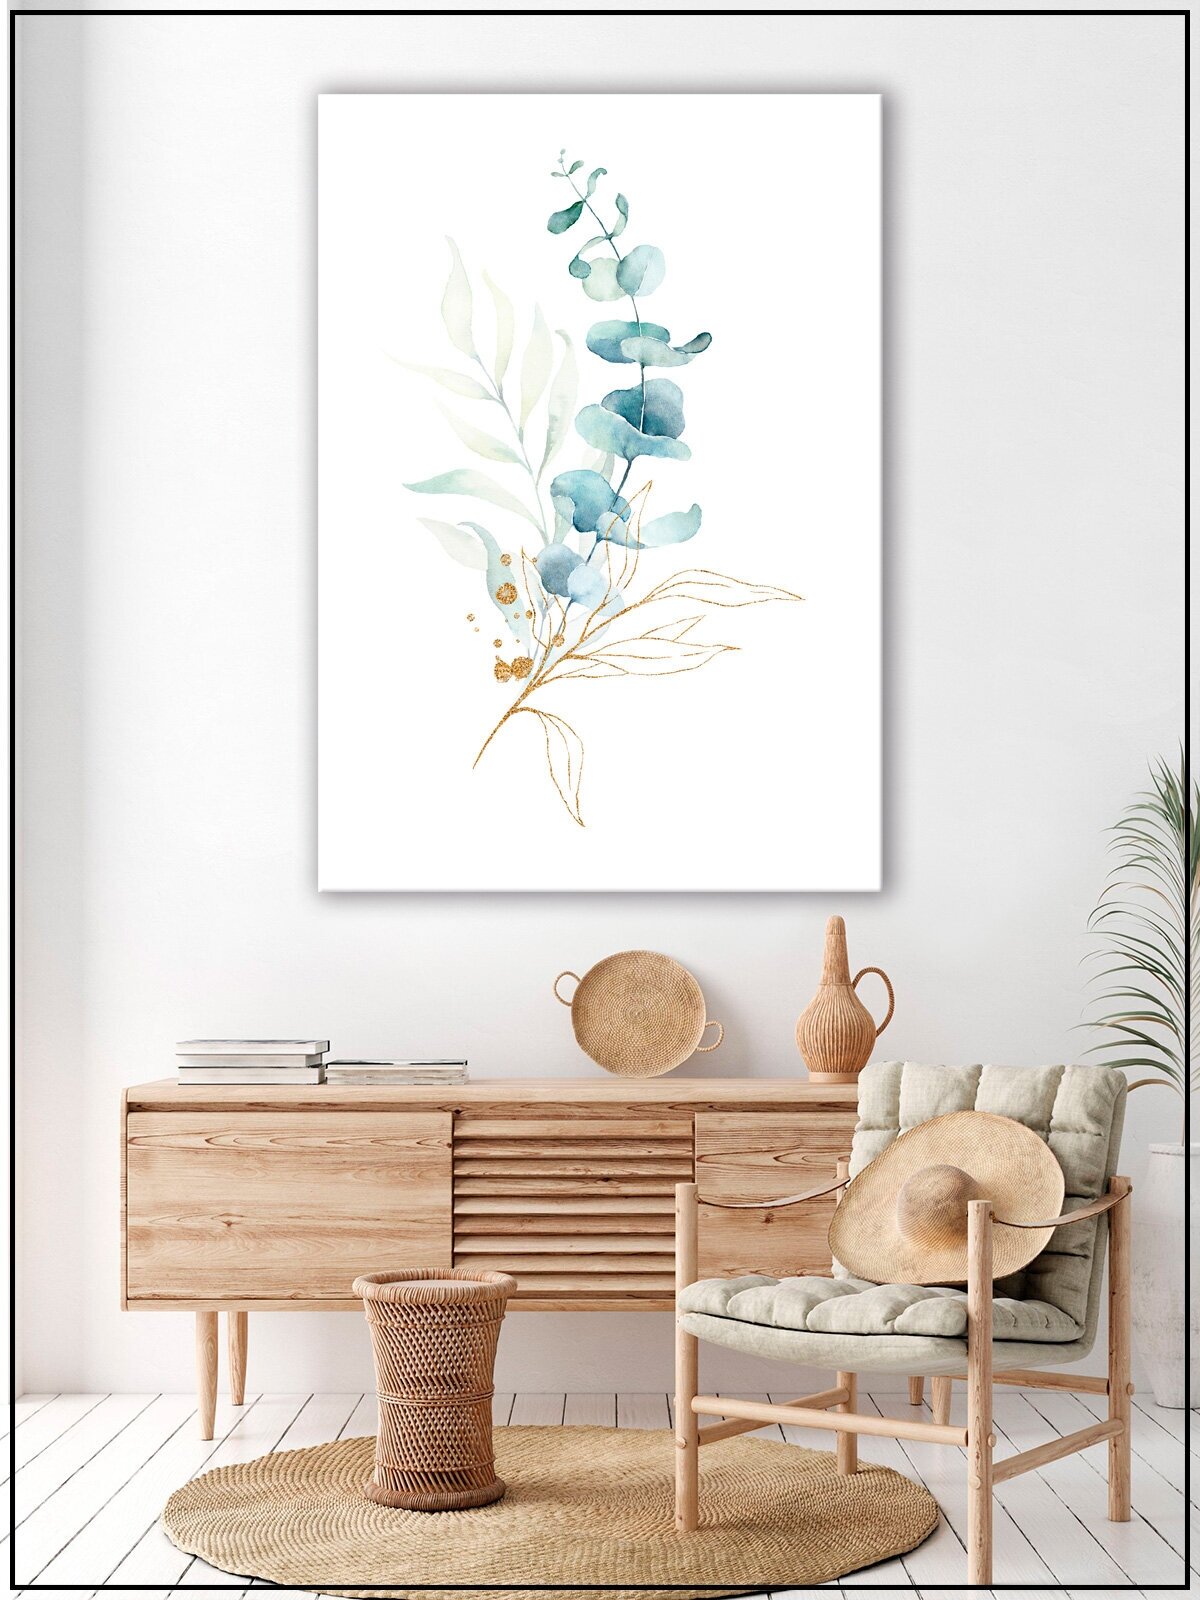 Картина для интерьера на натуральном хлопковом холсте "Акварельные цветочные ветви", 30*40см, холст на подрамнике, картина в подарок